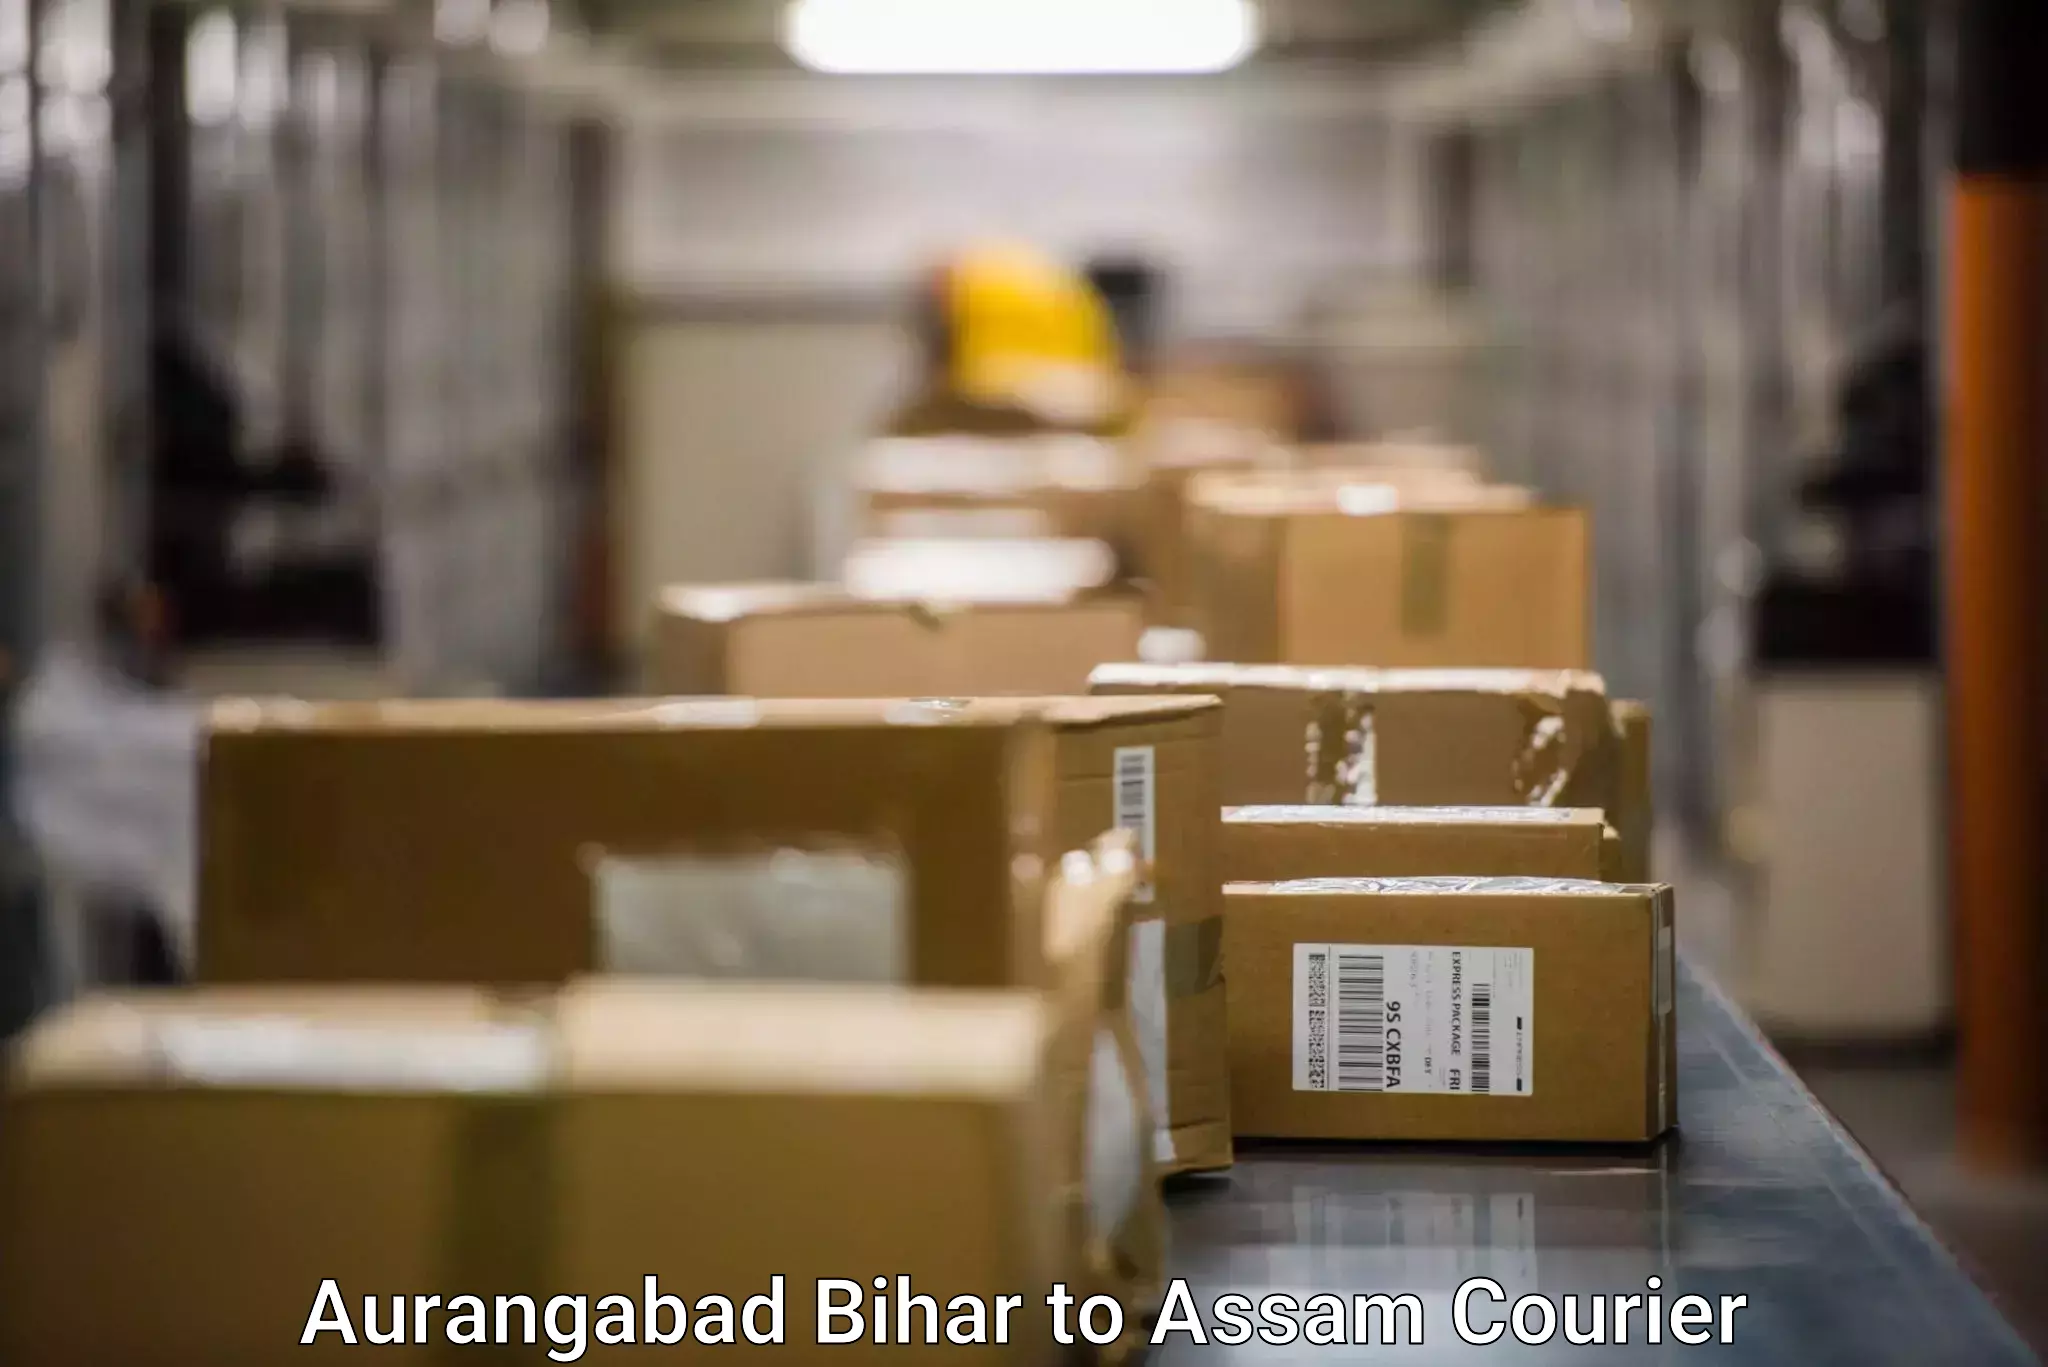 User-friendly courier app Aurangabad Bihar to Assam